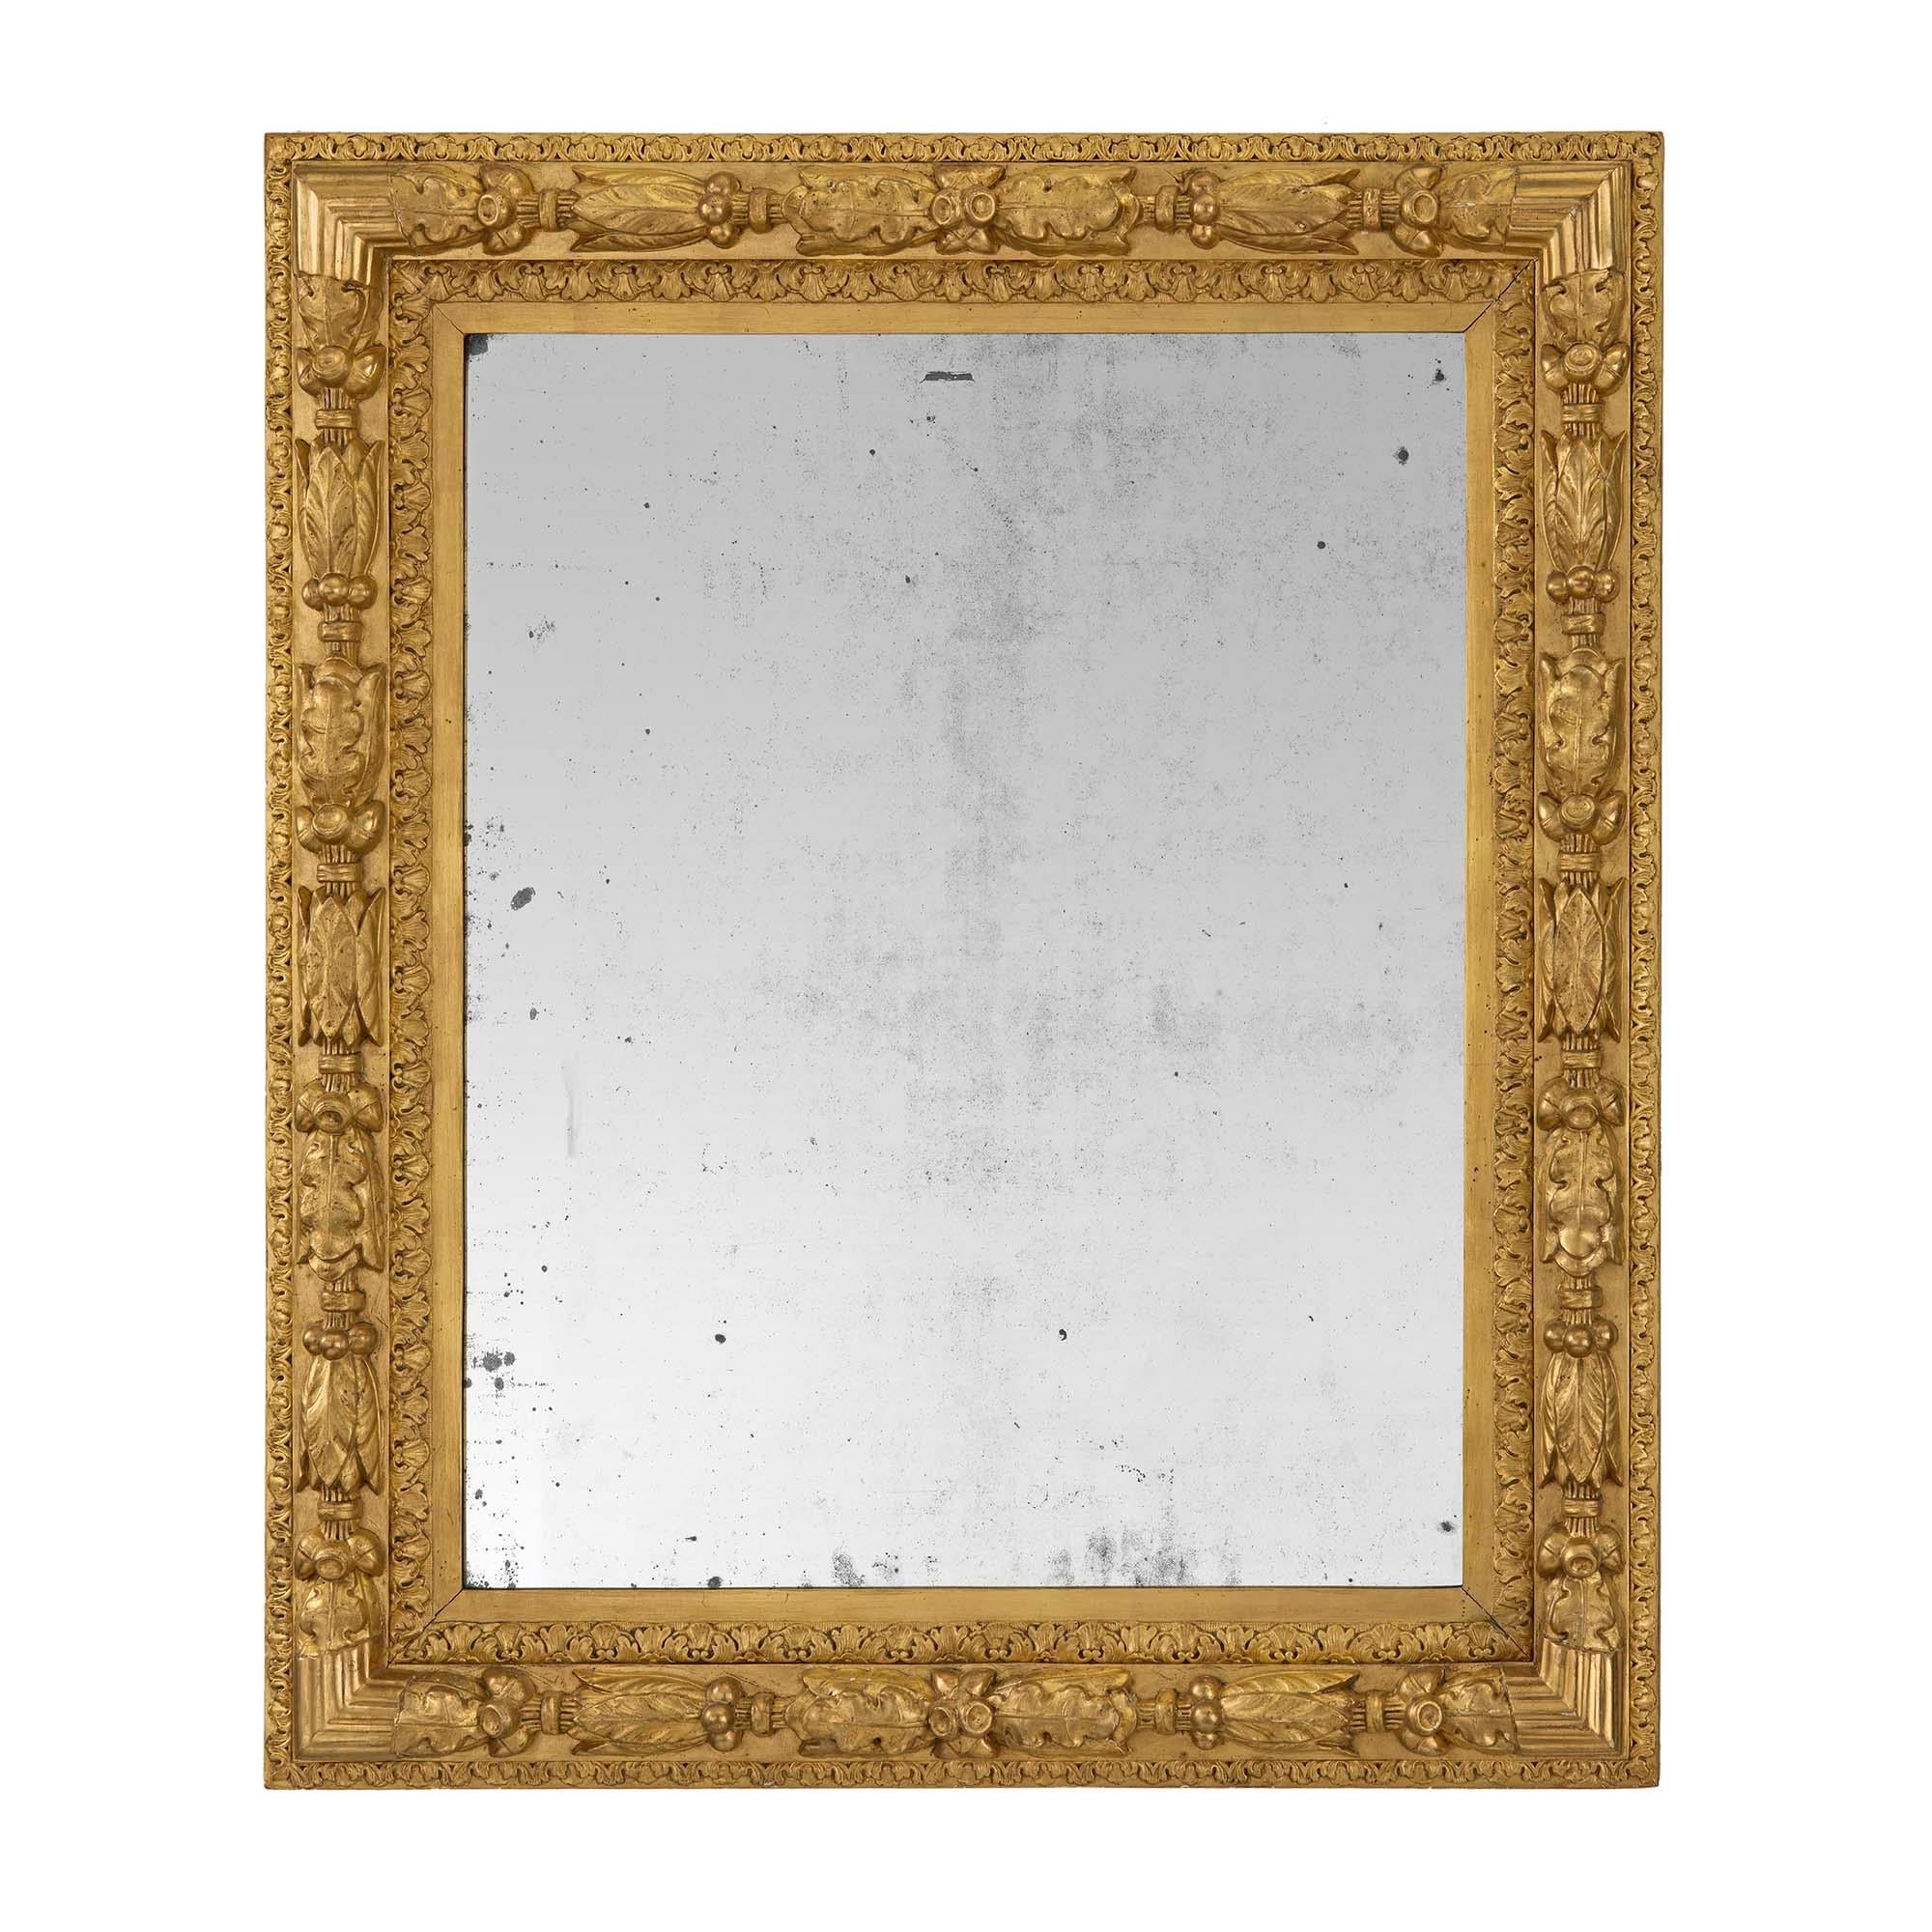 Paire de miroirs en bois doré de style Louis XVI du XIXe siècle. Chaque miroir a conservé sa plaque d'origine encadrée par de magnifiques bordures en bois doré moucheté. Le cadre présente une bande feuillagée richement sculptée, des feuilles de